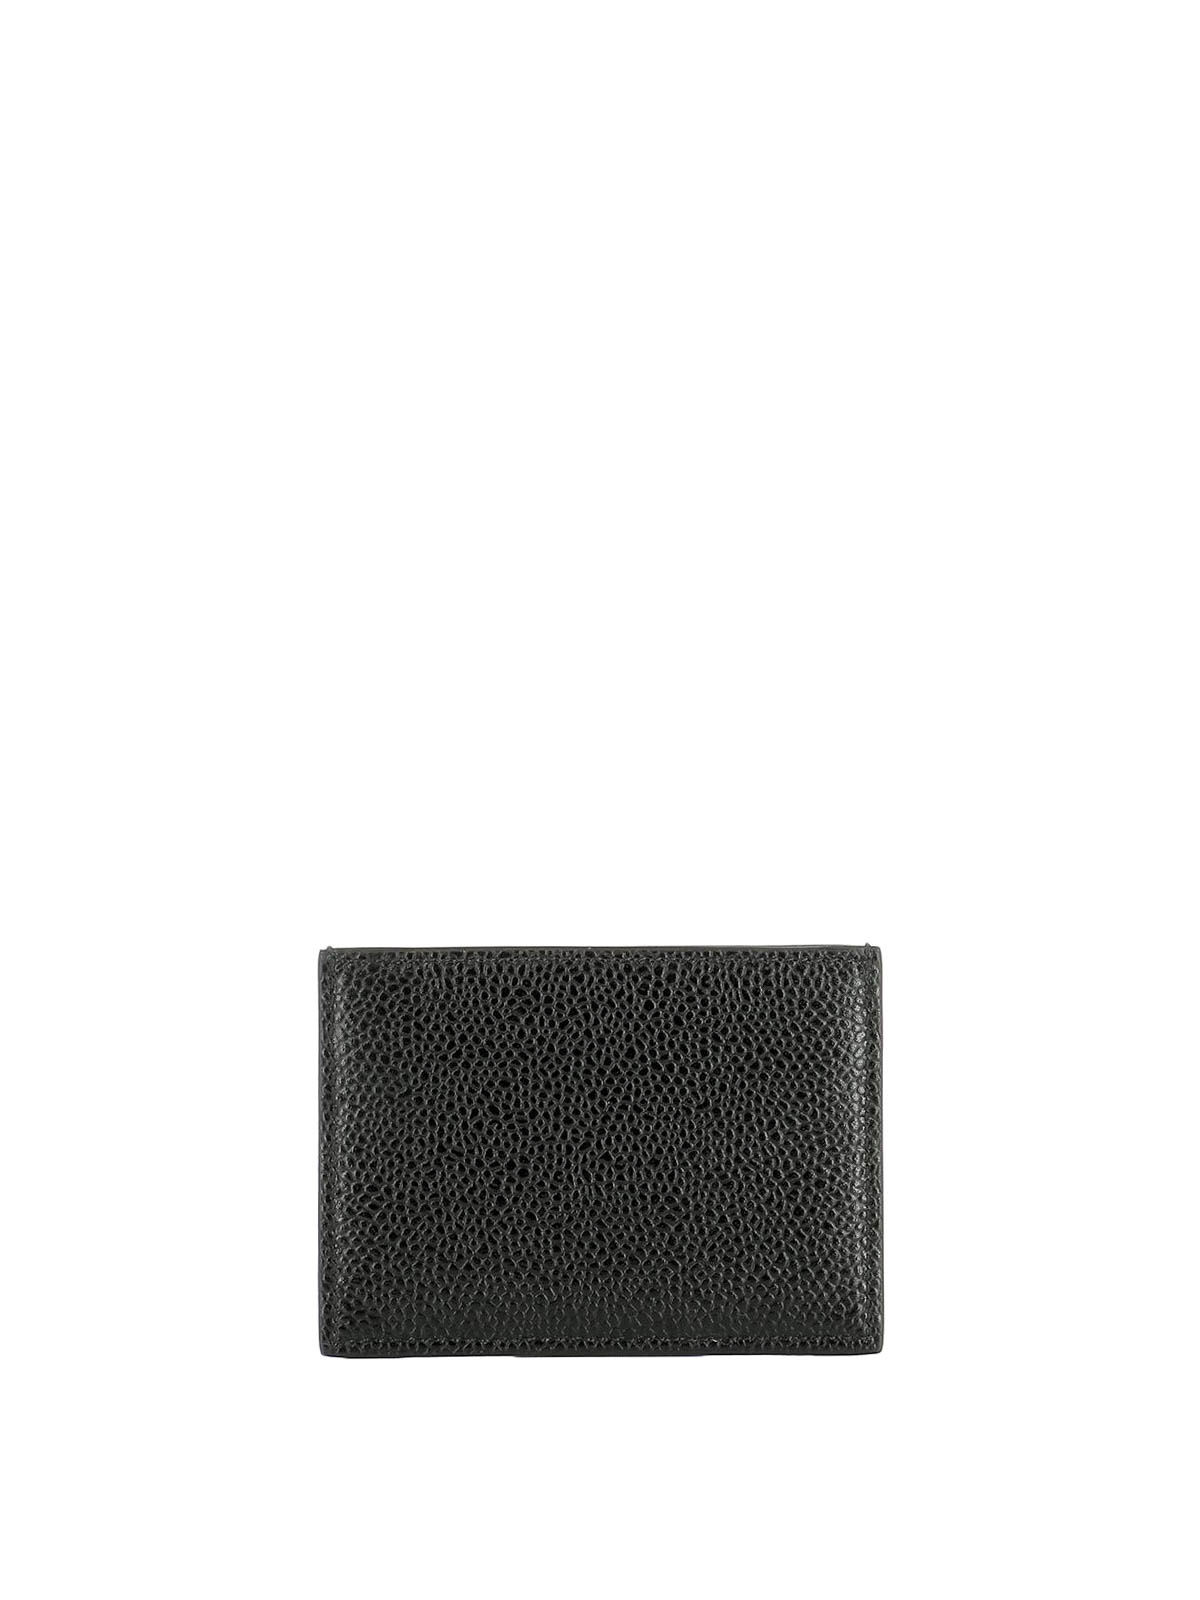 Shop Thom Browne Black Leather Card Holder